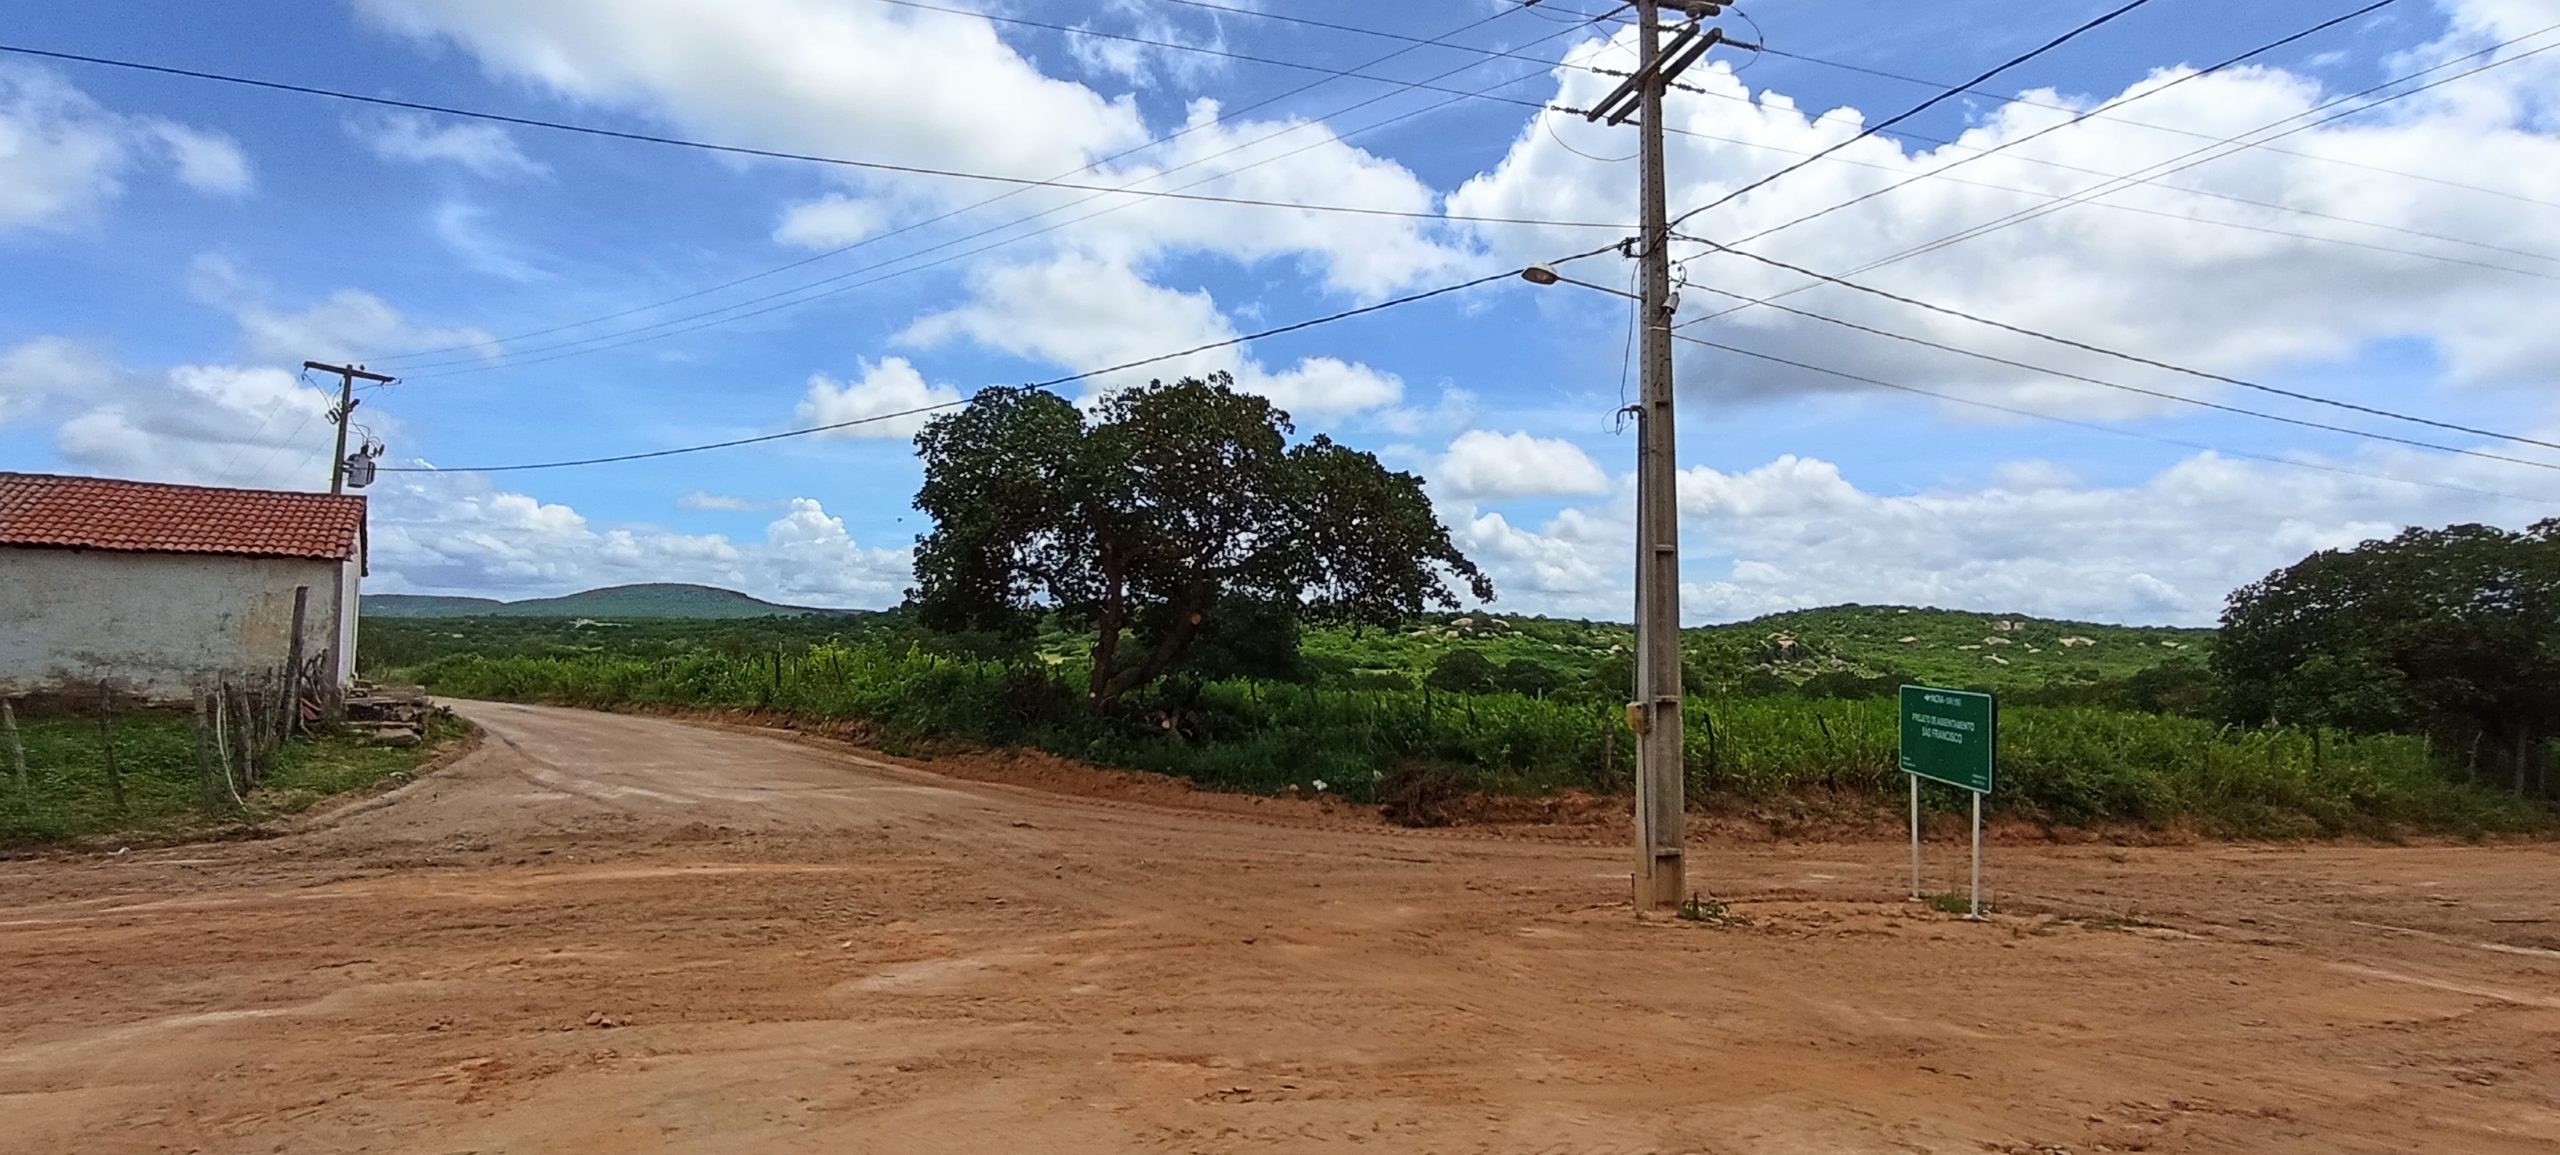 Cerro Corá: Iniciada melhorias nas estradas vicinais(Vídeos)